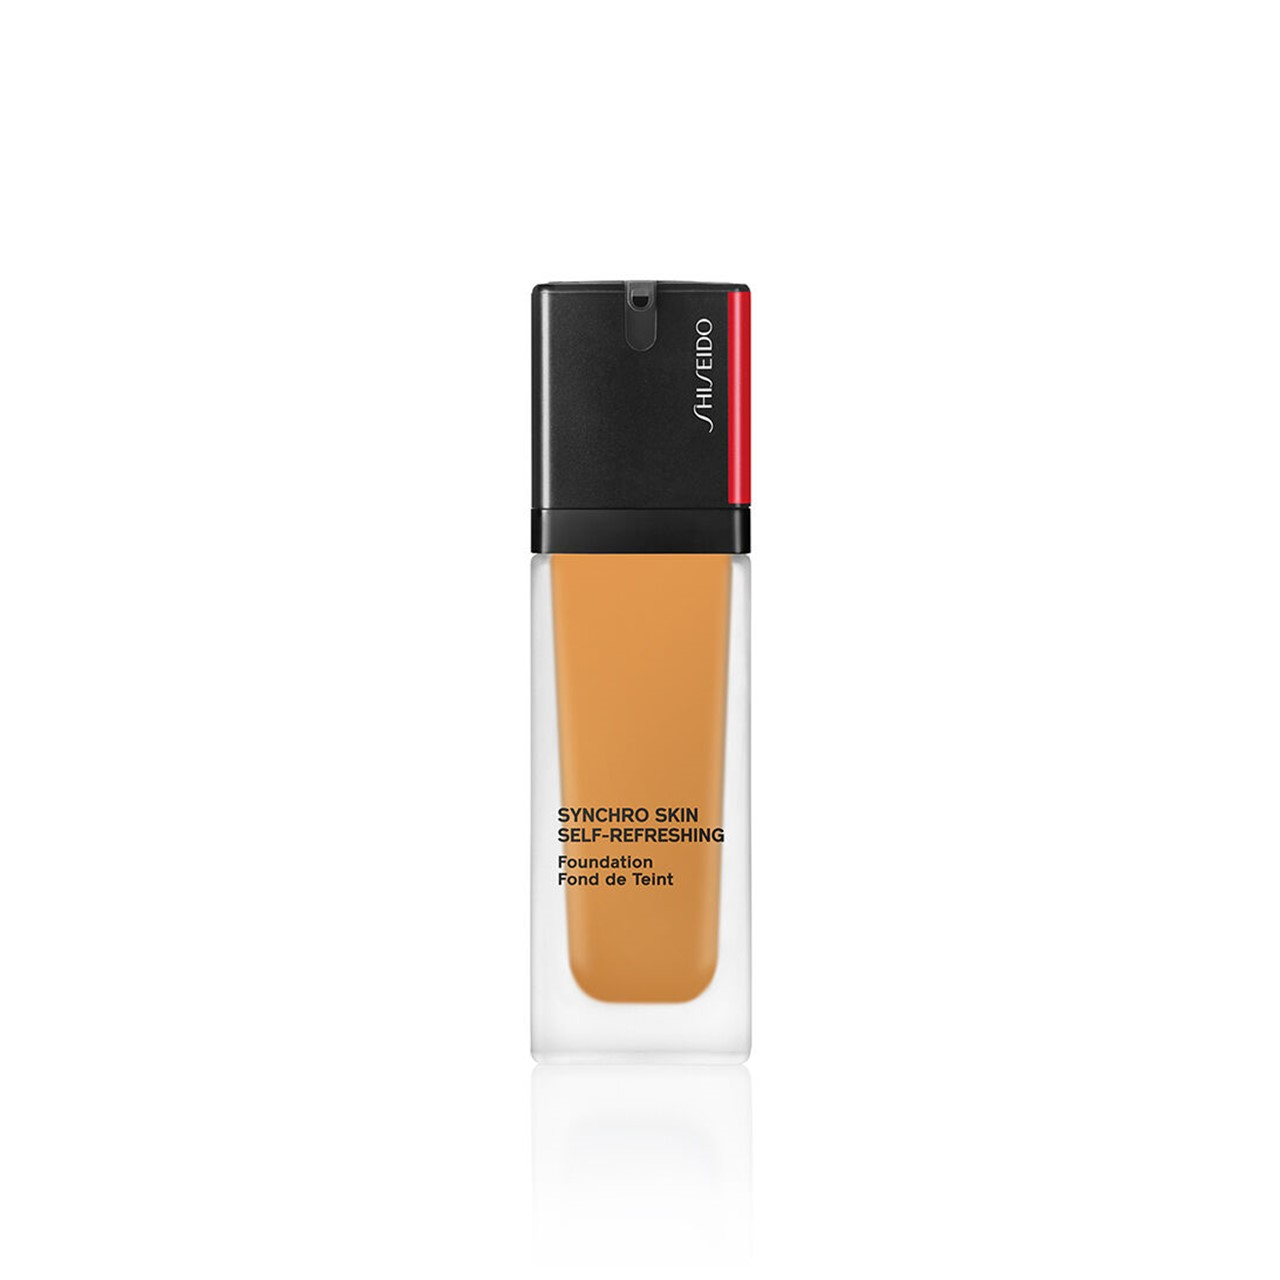 Shiseido Synchro Skin Self-Refreshing Foundation SPF30 420 Bronze 30ml (1.01fl oz)